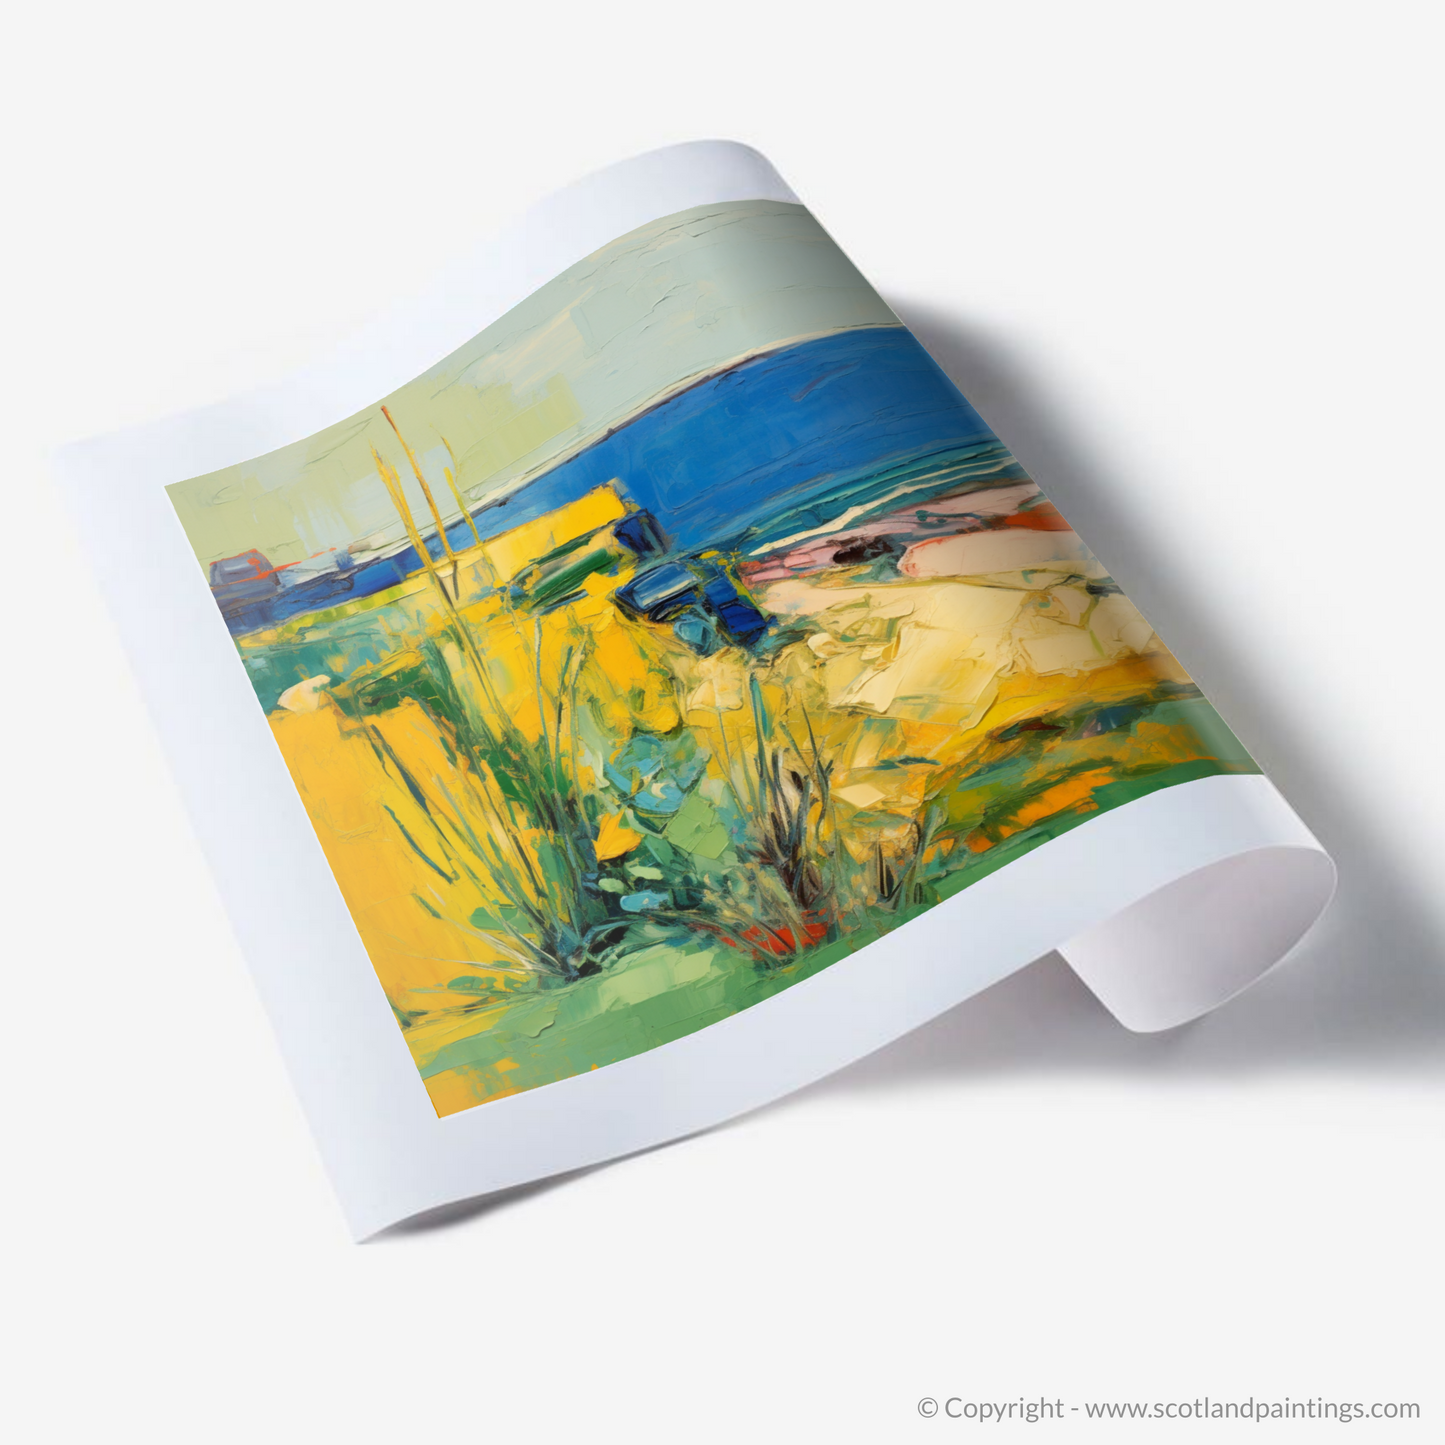 Golden Samphire of Berwick Cliffs: An Abstract Expressionist Ode